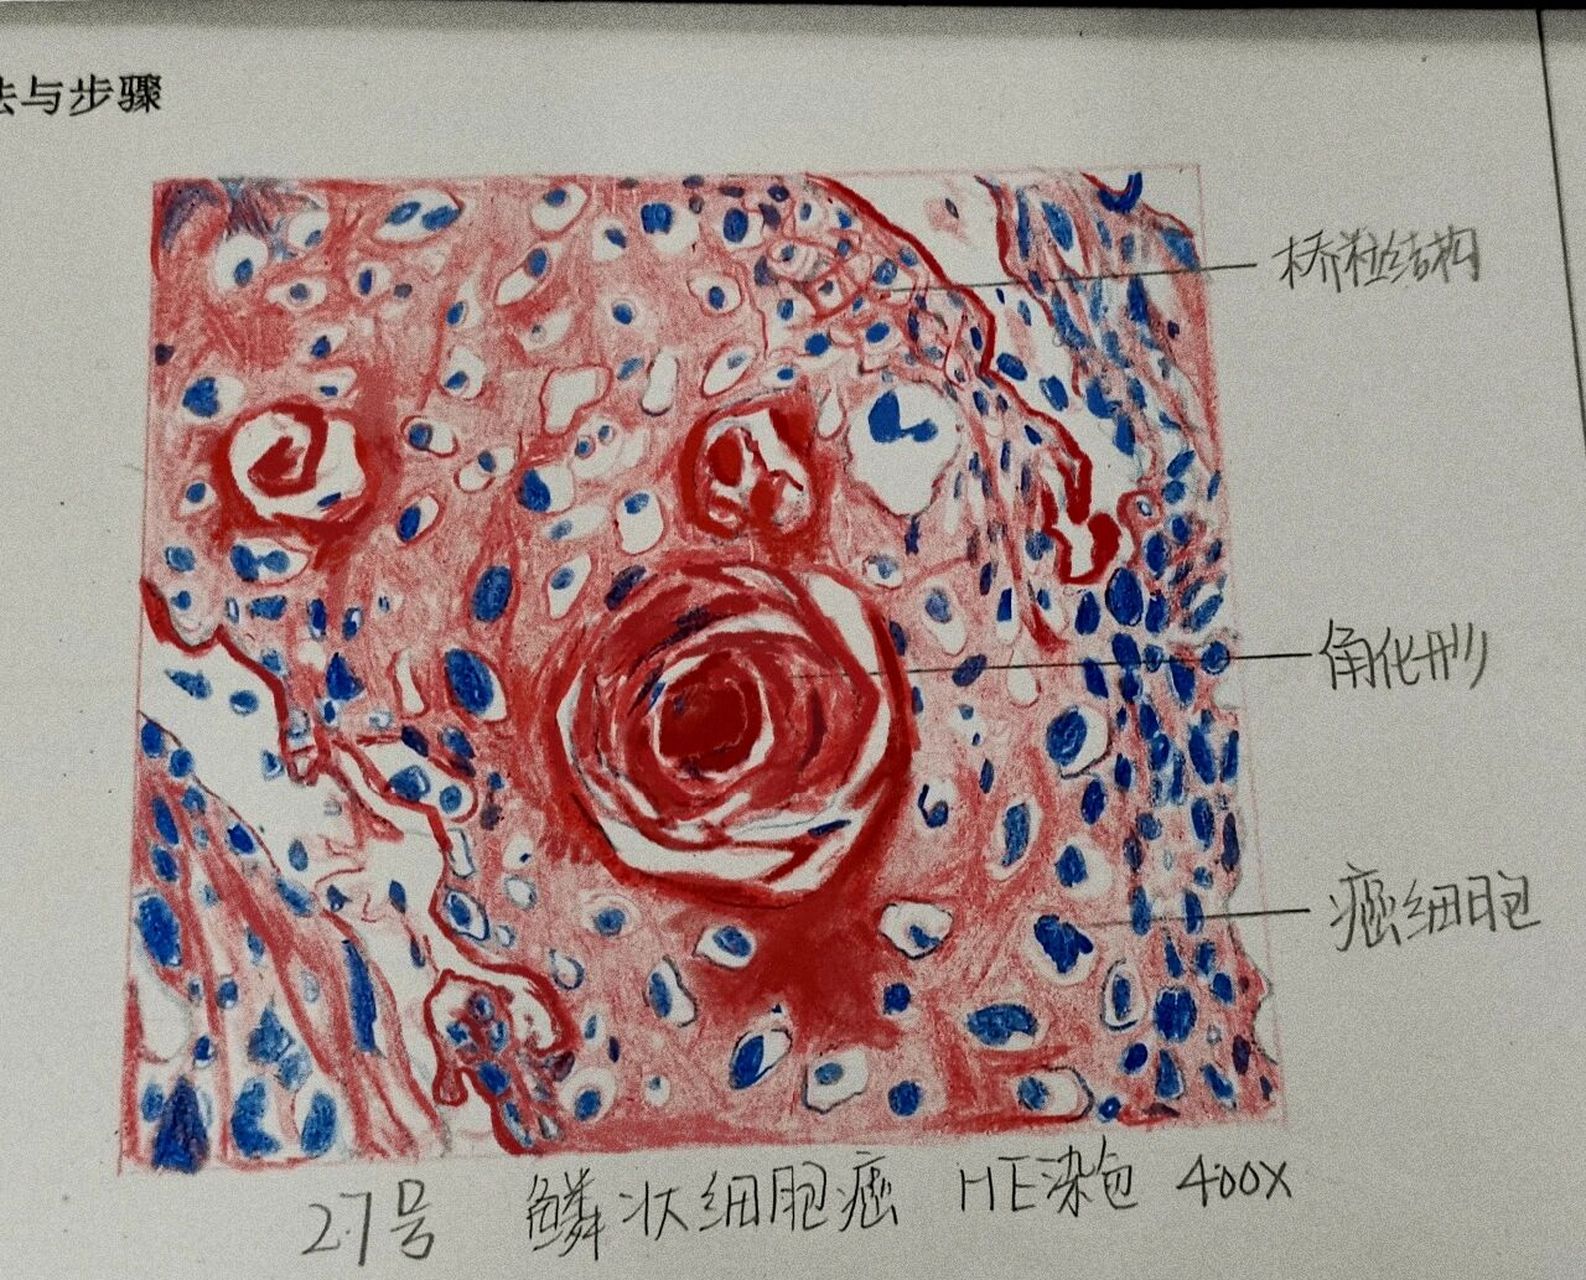 食管鳞癌病理手绘图图片